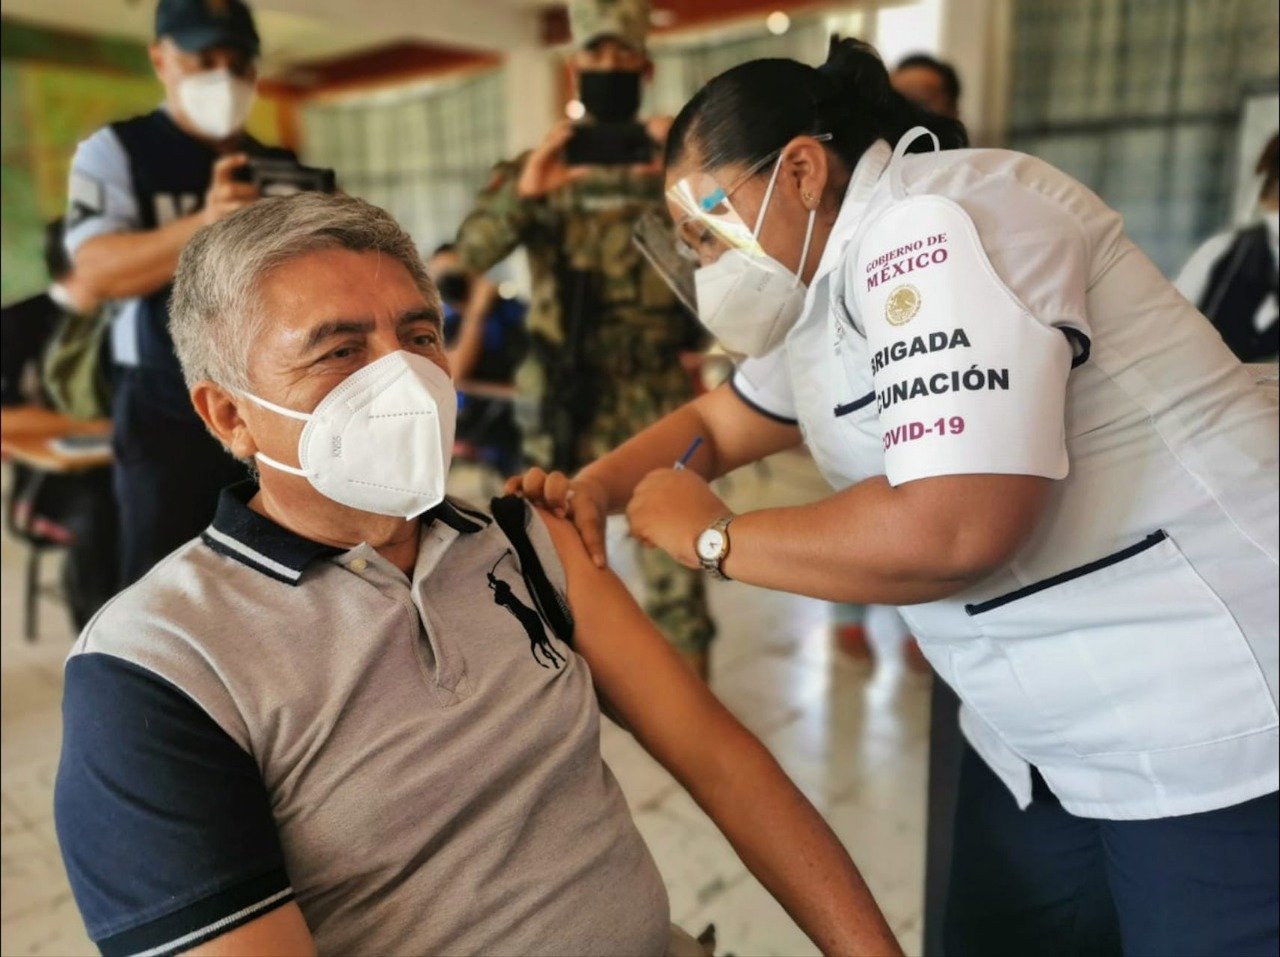 Señor adulto mayor con cubrebocas color blanco, camisa color gris claro con negro, recibe vacunacion de una señora que tiene filipina color blanco, careta y cubreboca color blanco.